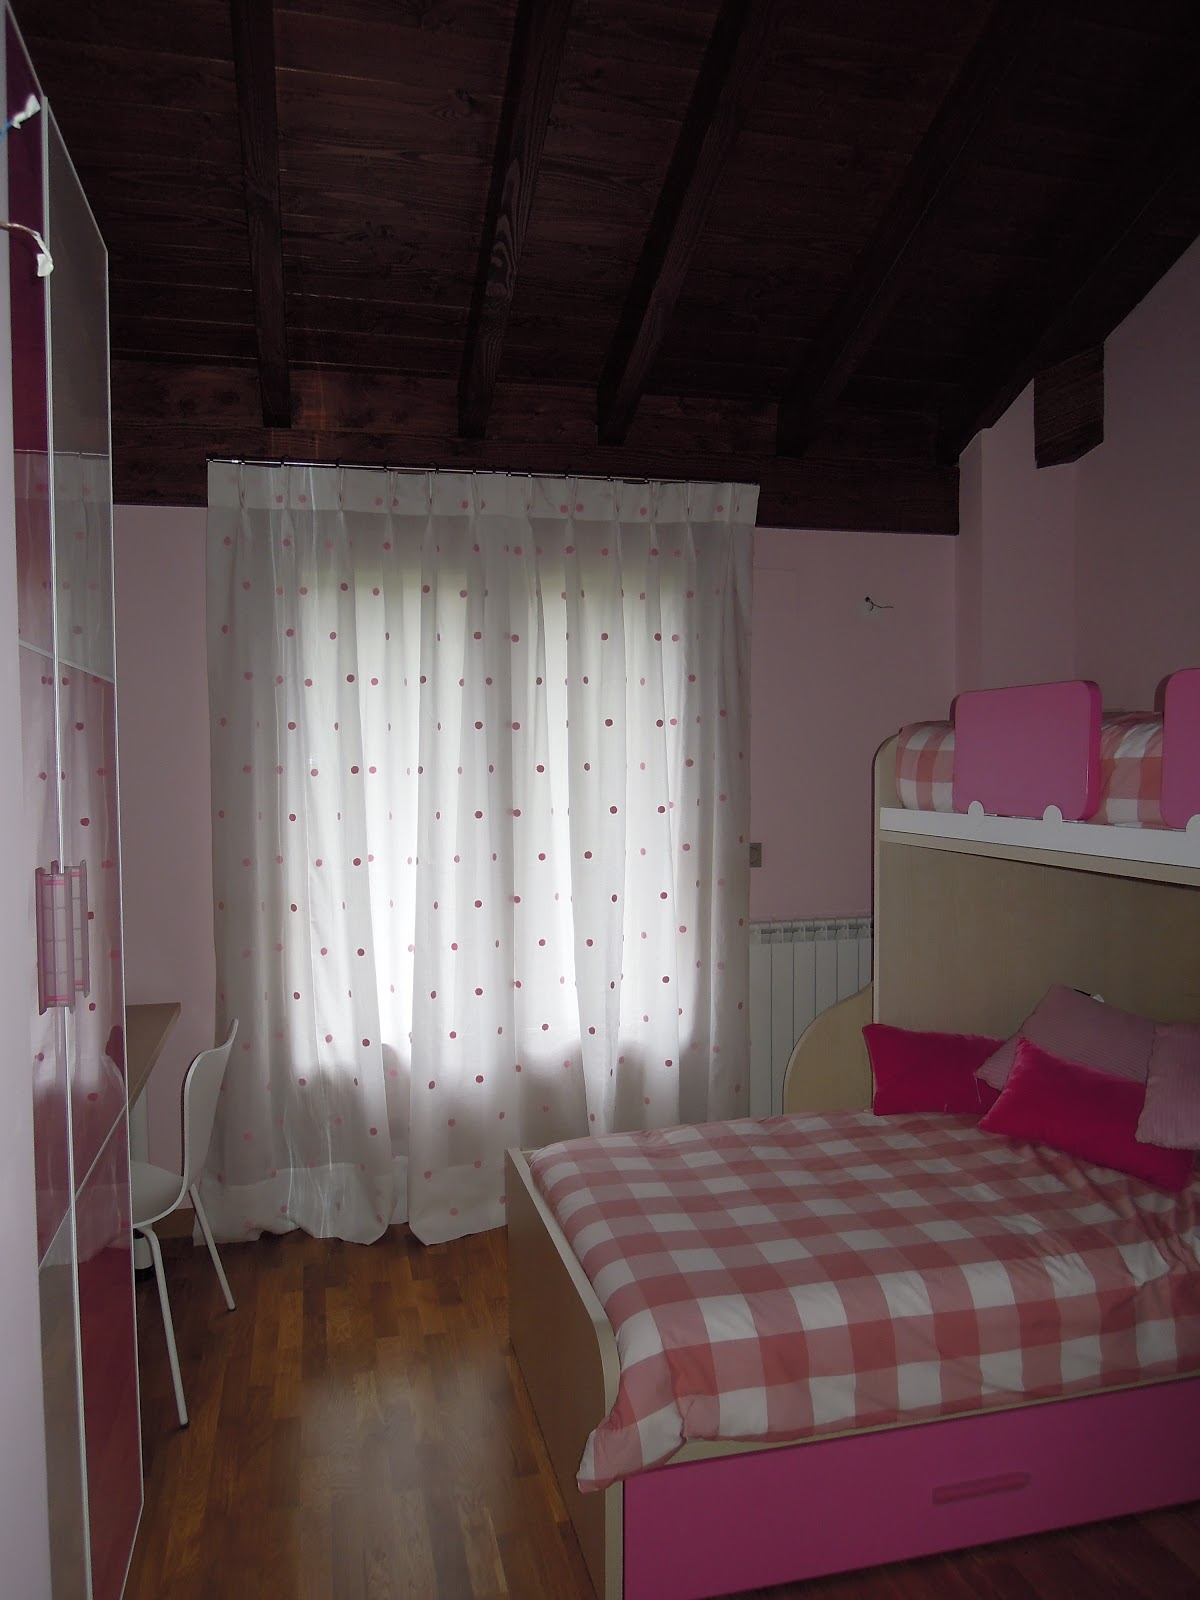 Fotos de Cortinas: Dormitorio Juvenil 2012